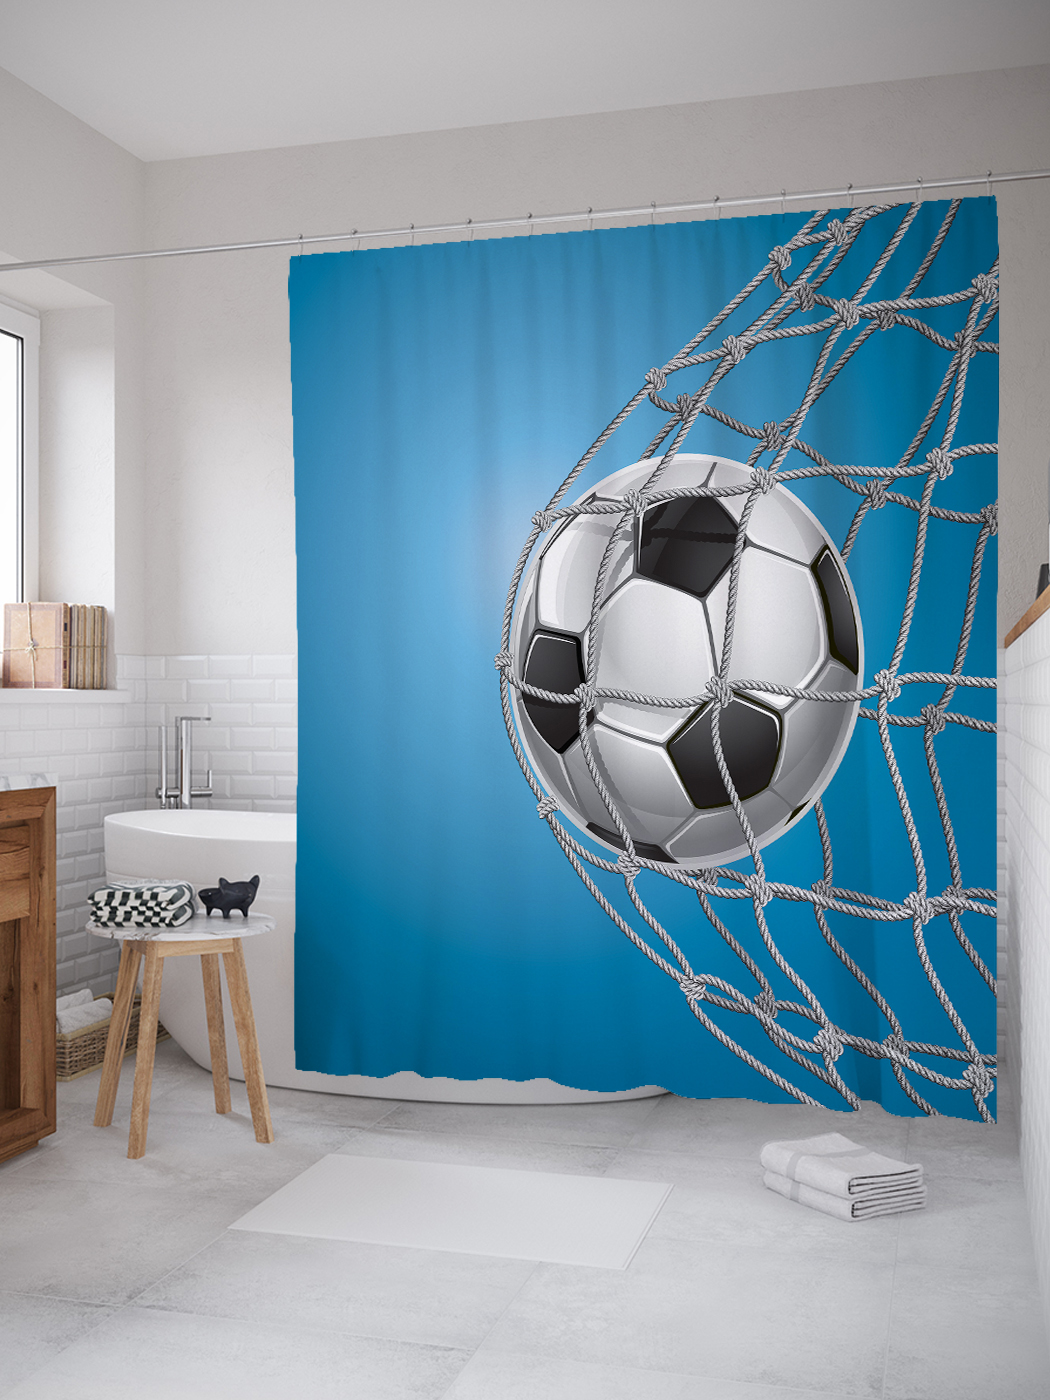 фото Joyarty штора (занавеска) для ванной «футбольный мяч» из ткани, 180х200 см с крючками